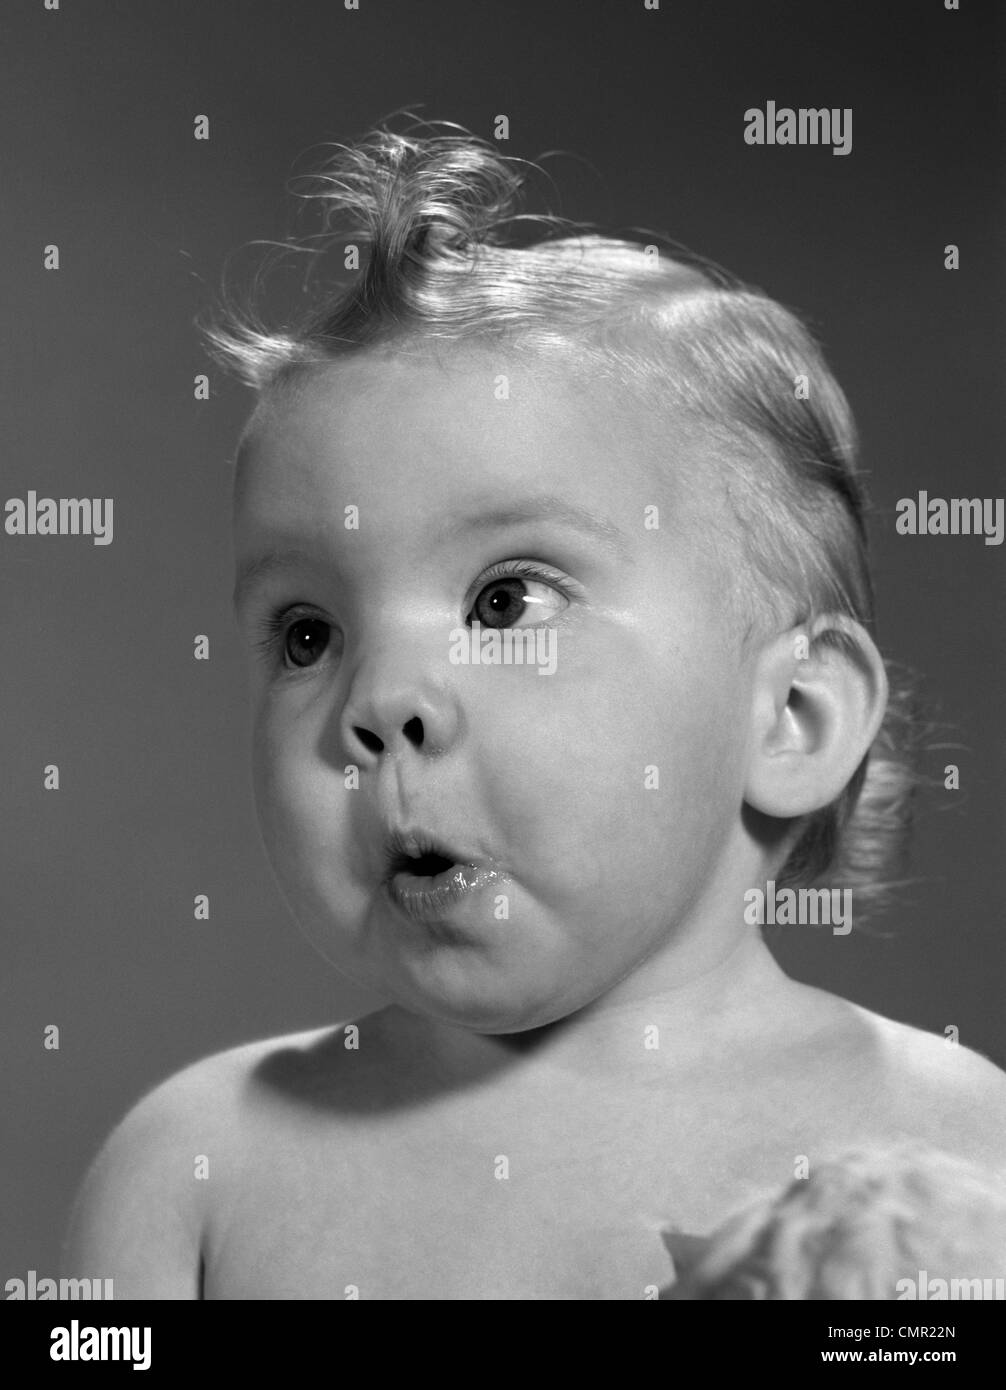 1960 disparo a la cabeza del bebé con sorprendida expresión Foto de stock